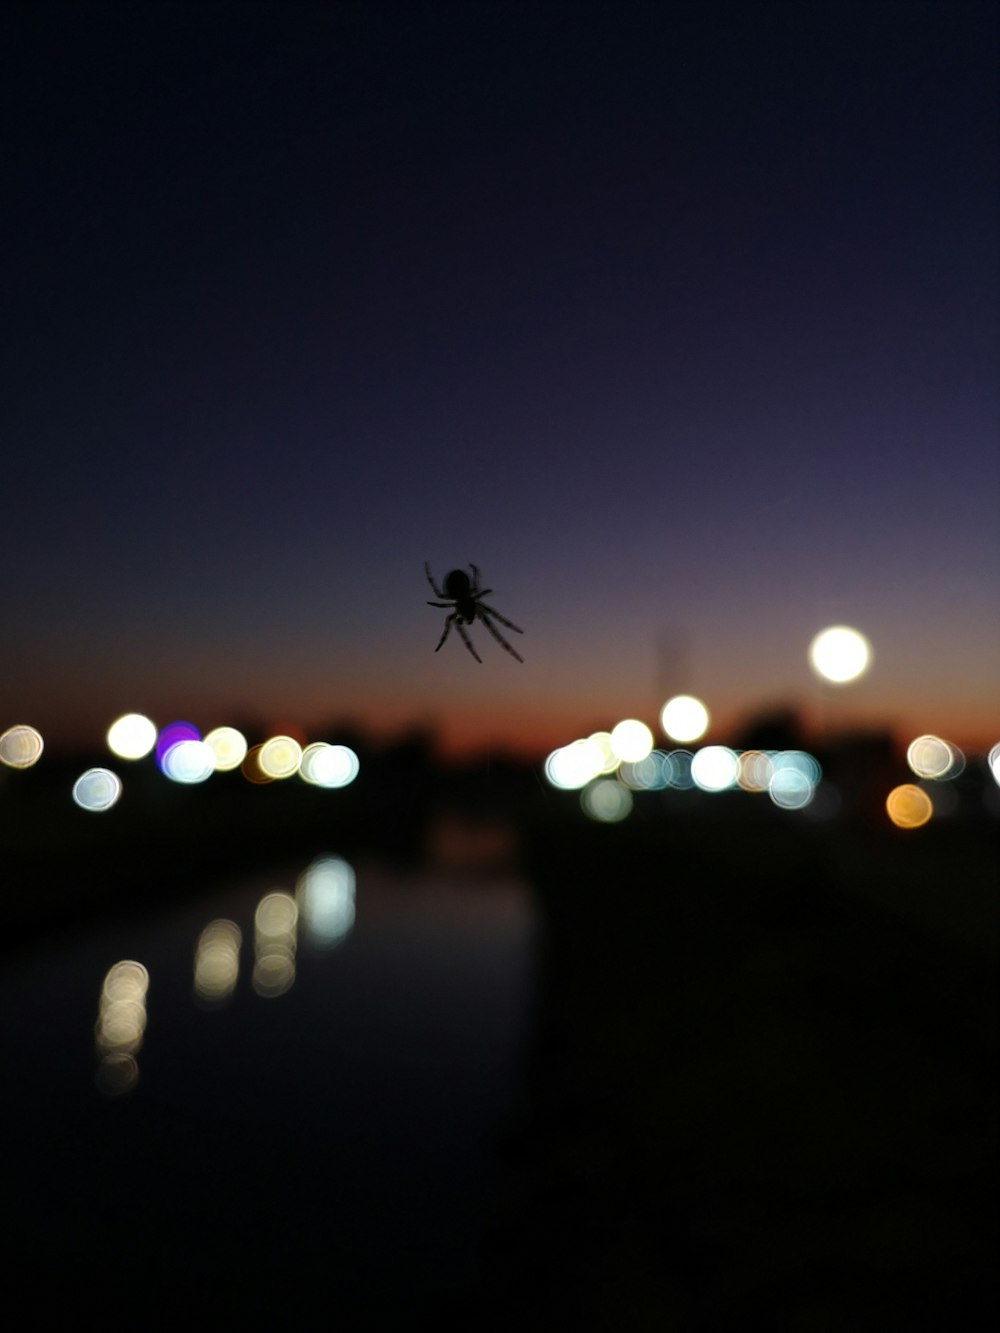 Une araignée suspendue sur le côté d’un bâtiment la nuit